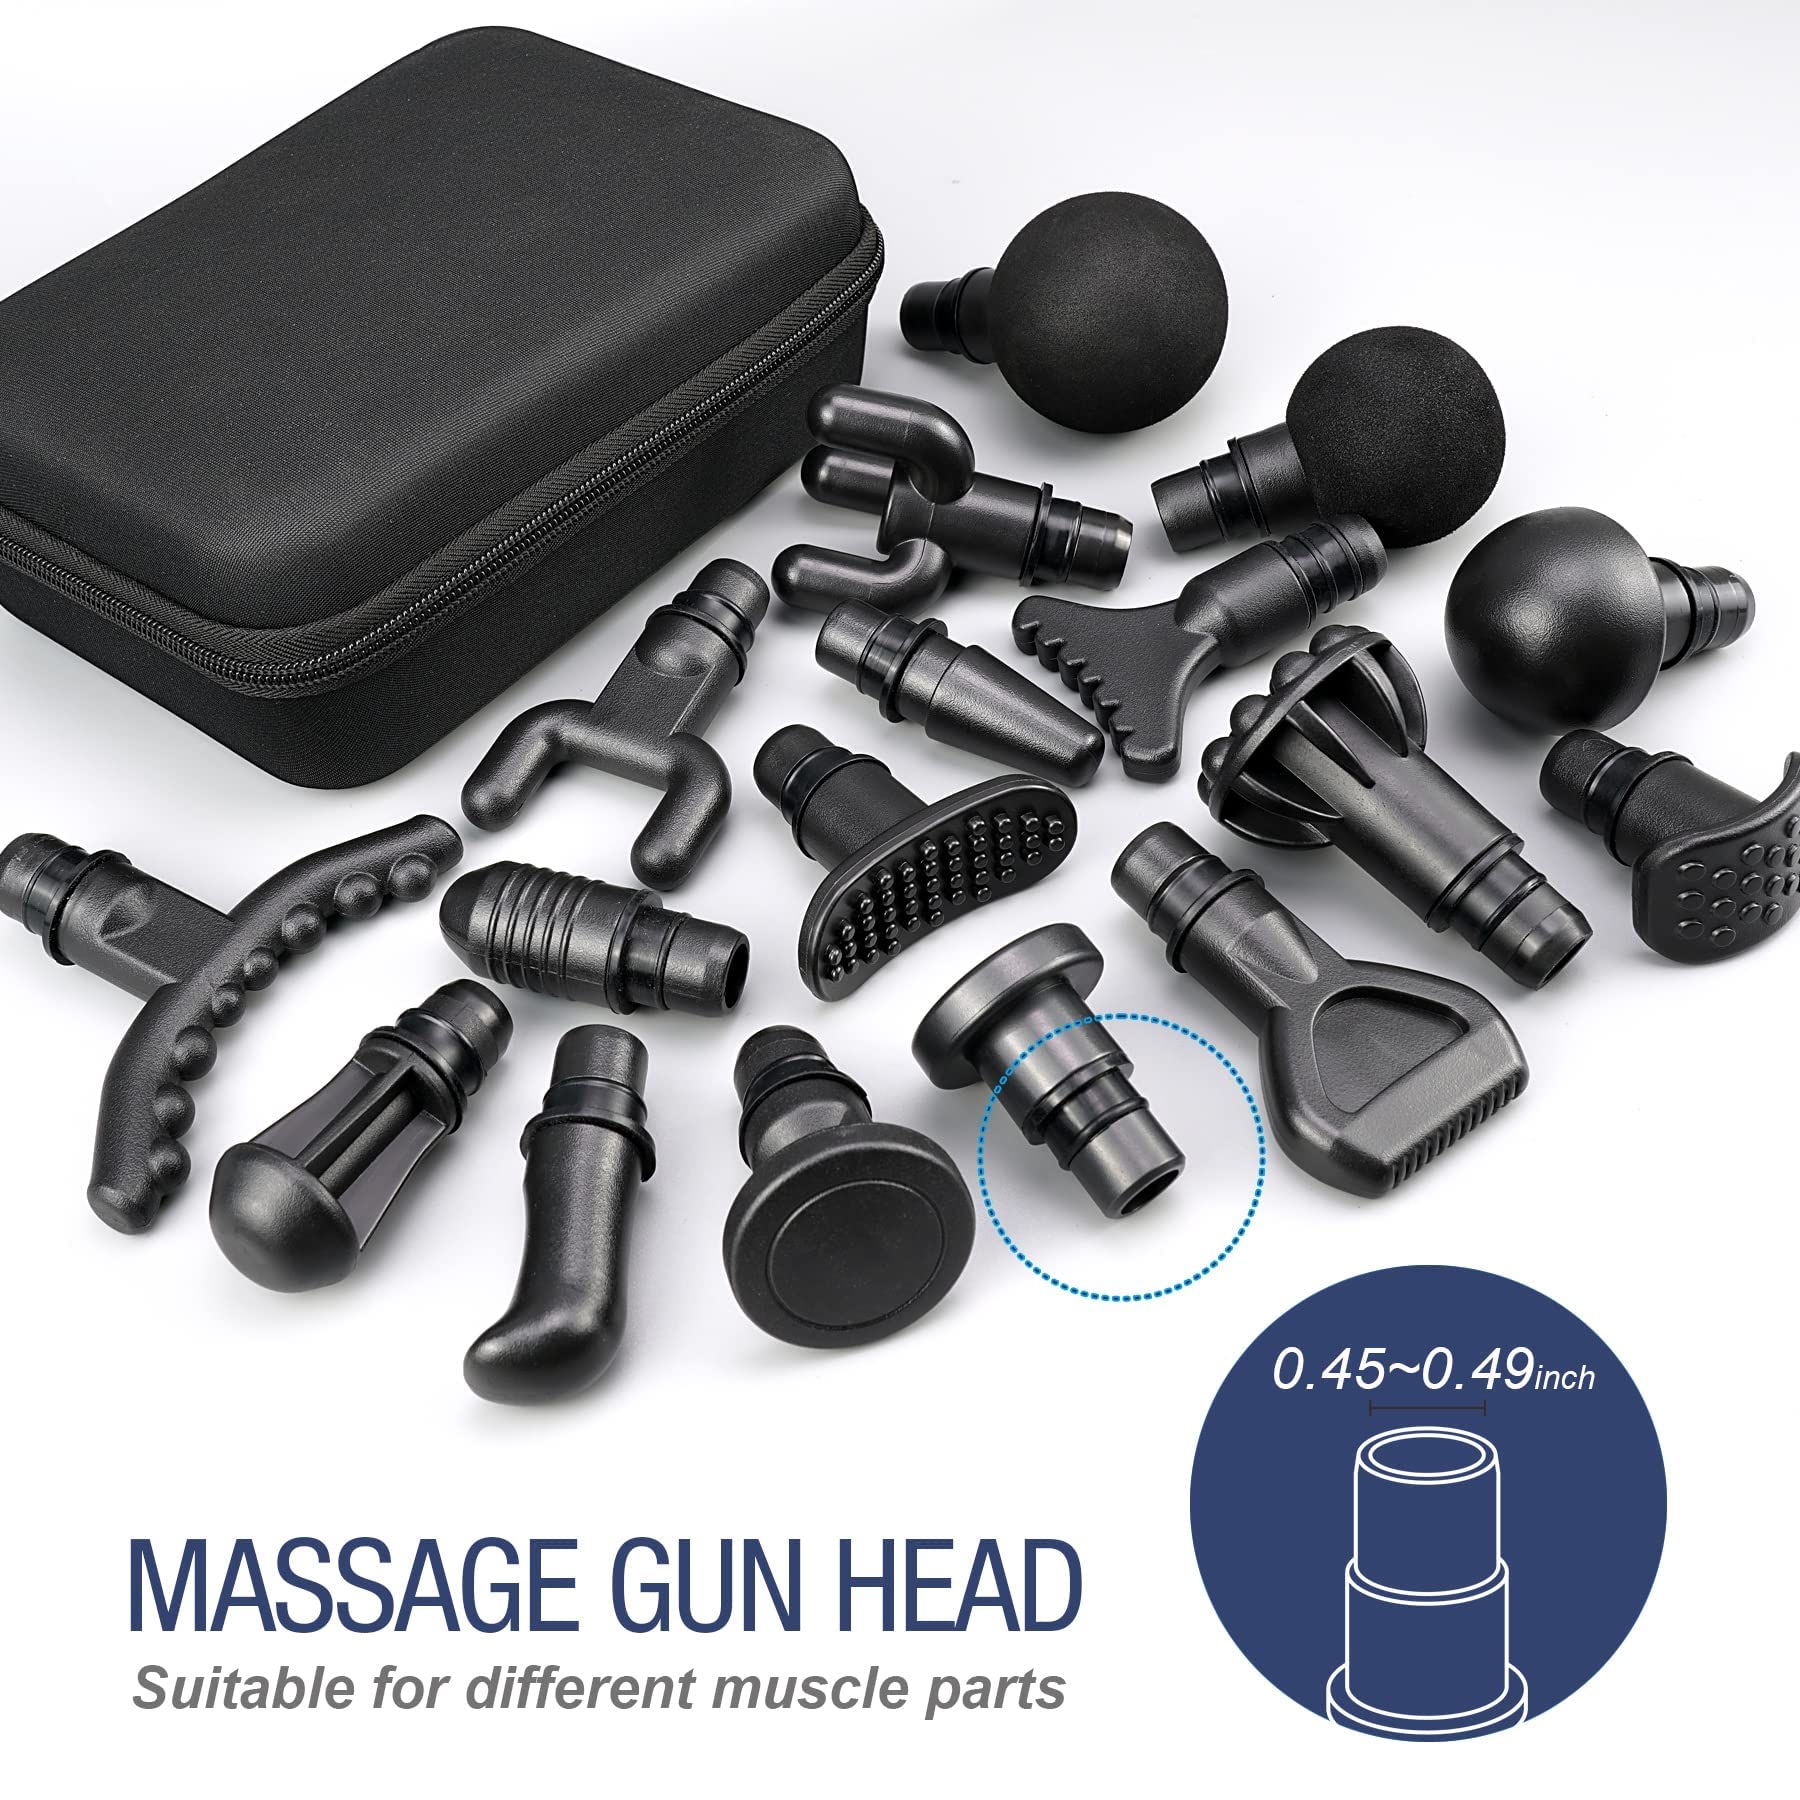 Legiral 13 Different Massage Gun Heads With Carrying Case Massage Gun 